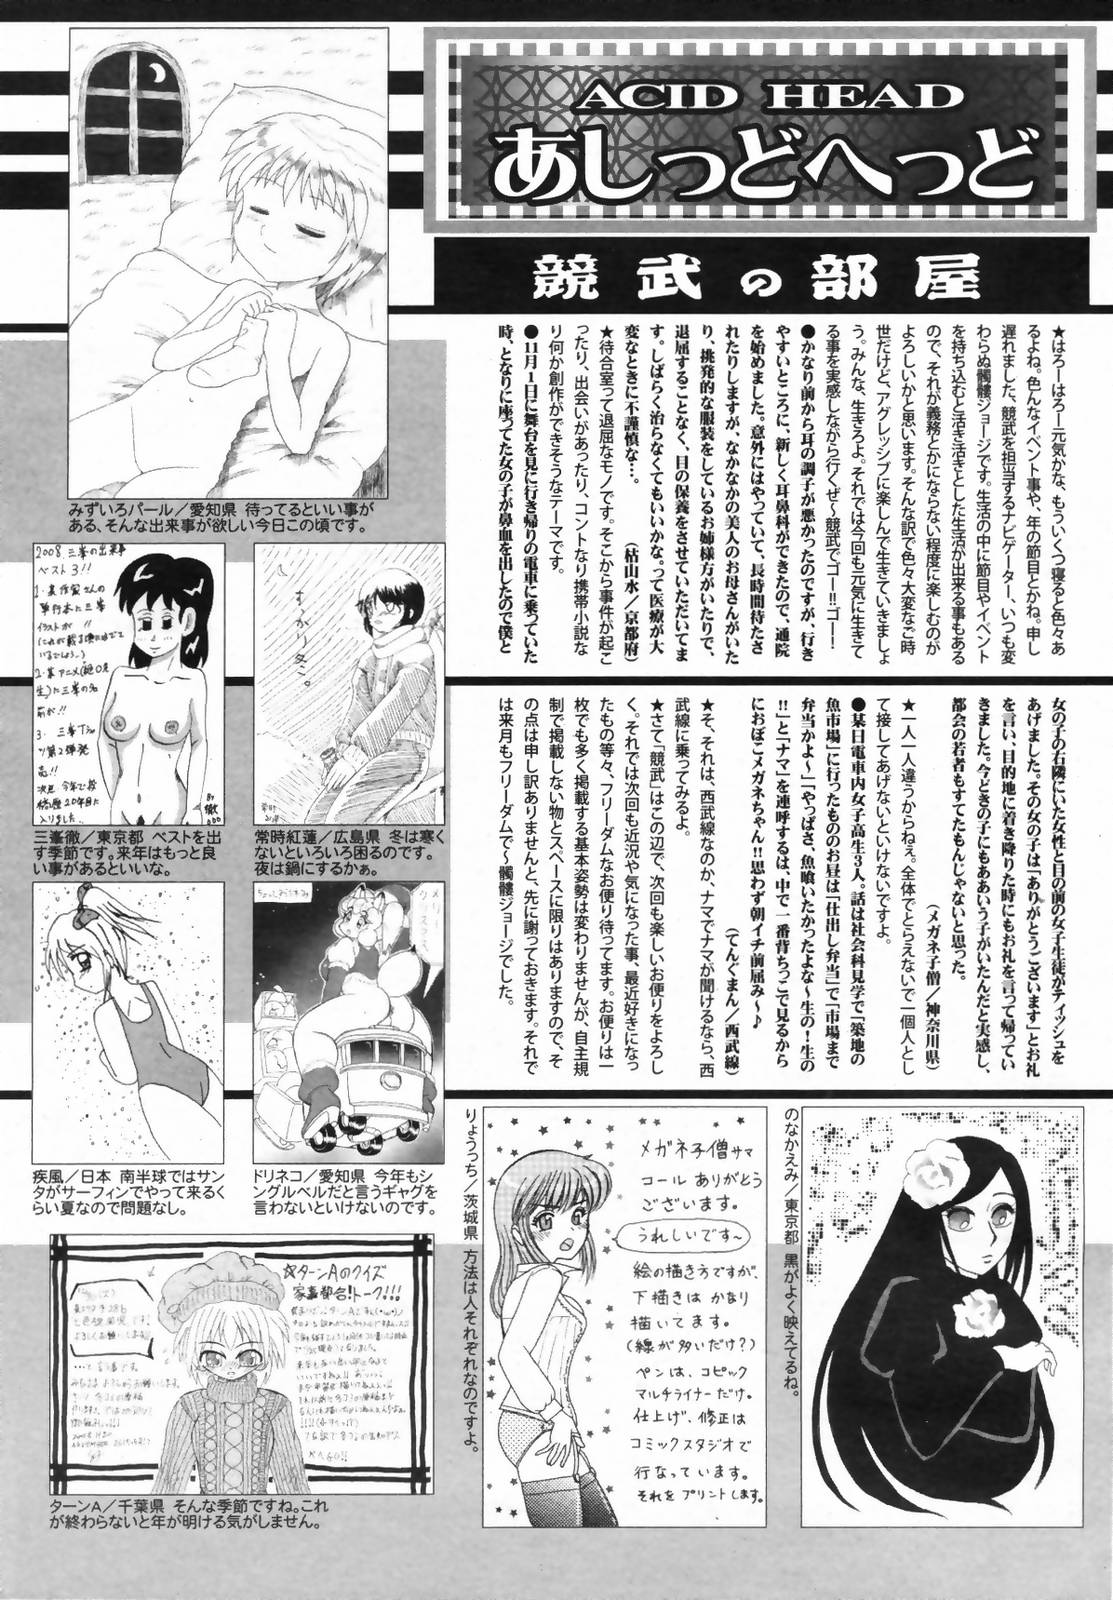 漫画ばんがいち 2009年2月号 VOL.234